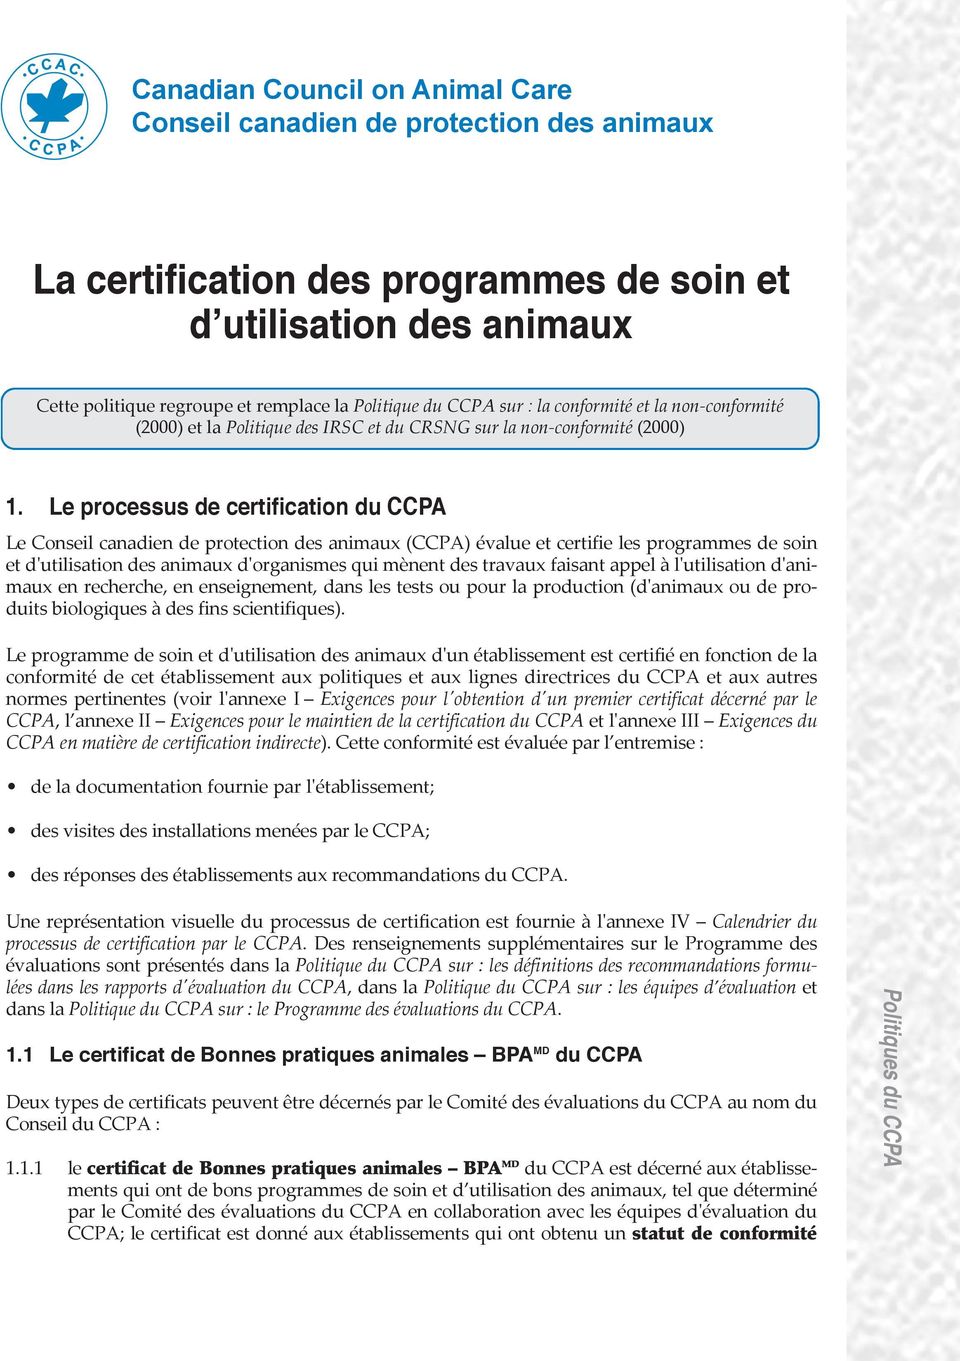 Le processus de certification du CCPA Le Conseil canadien de protection des animaux (CCPA) évalue et certifie les programmes de soin et d'utilisation des animaux d'organismes qui mènent des travaux